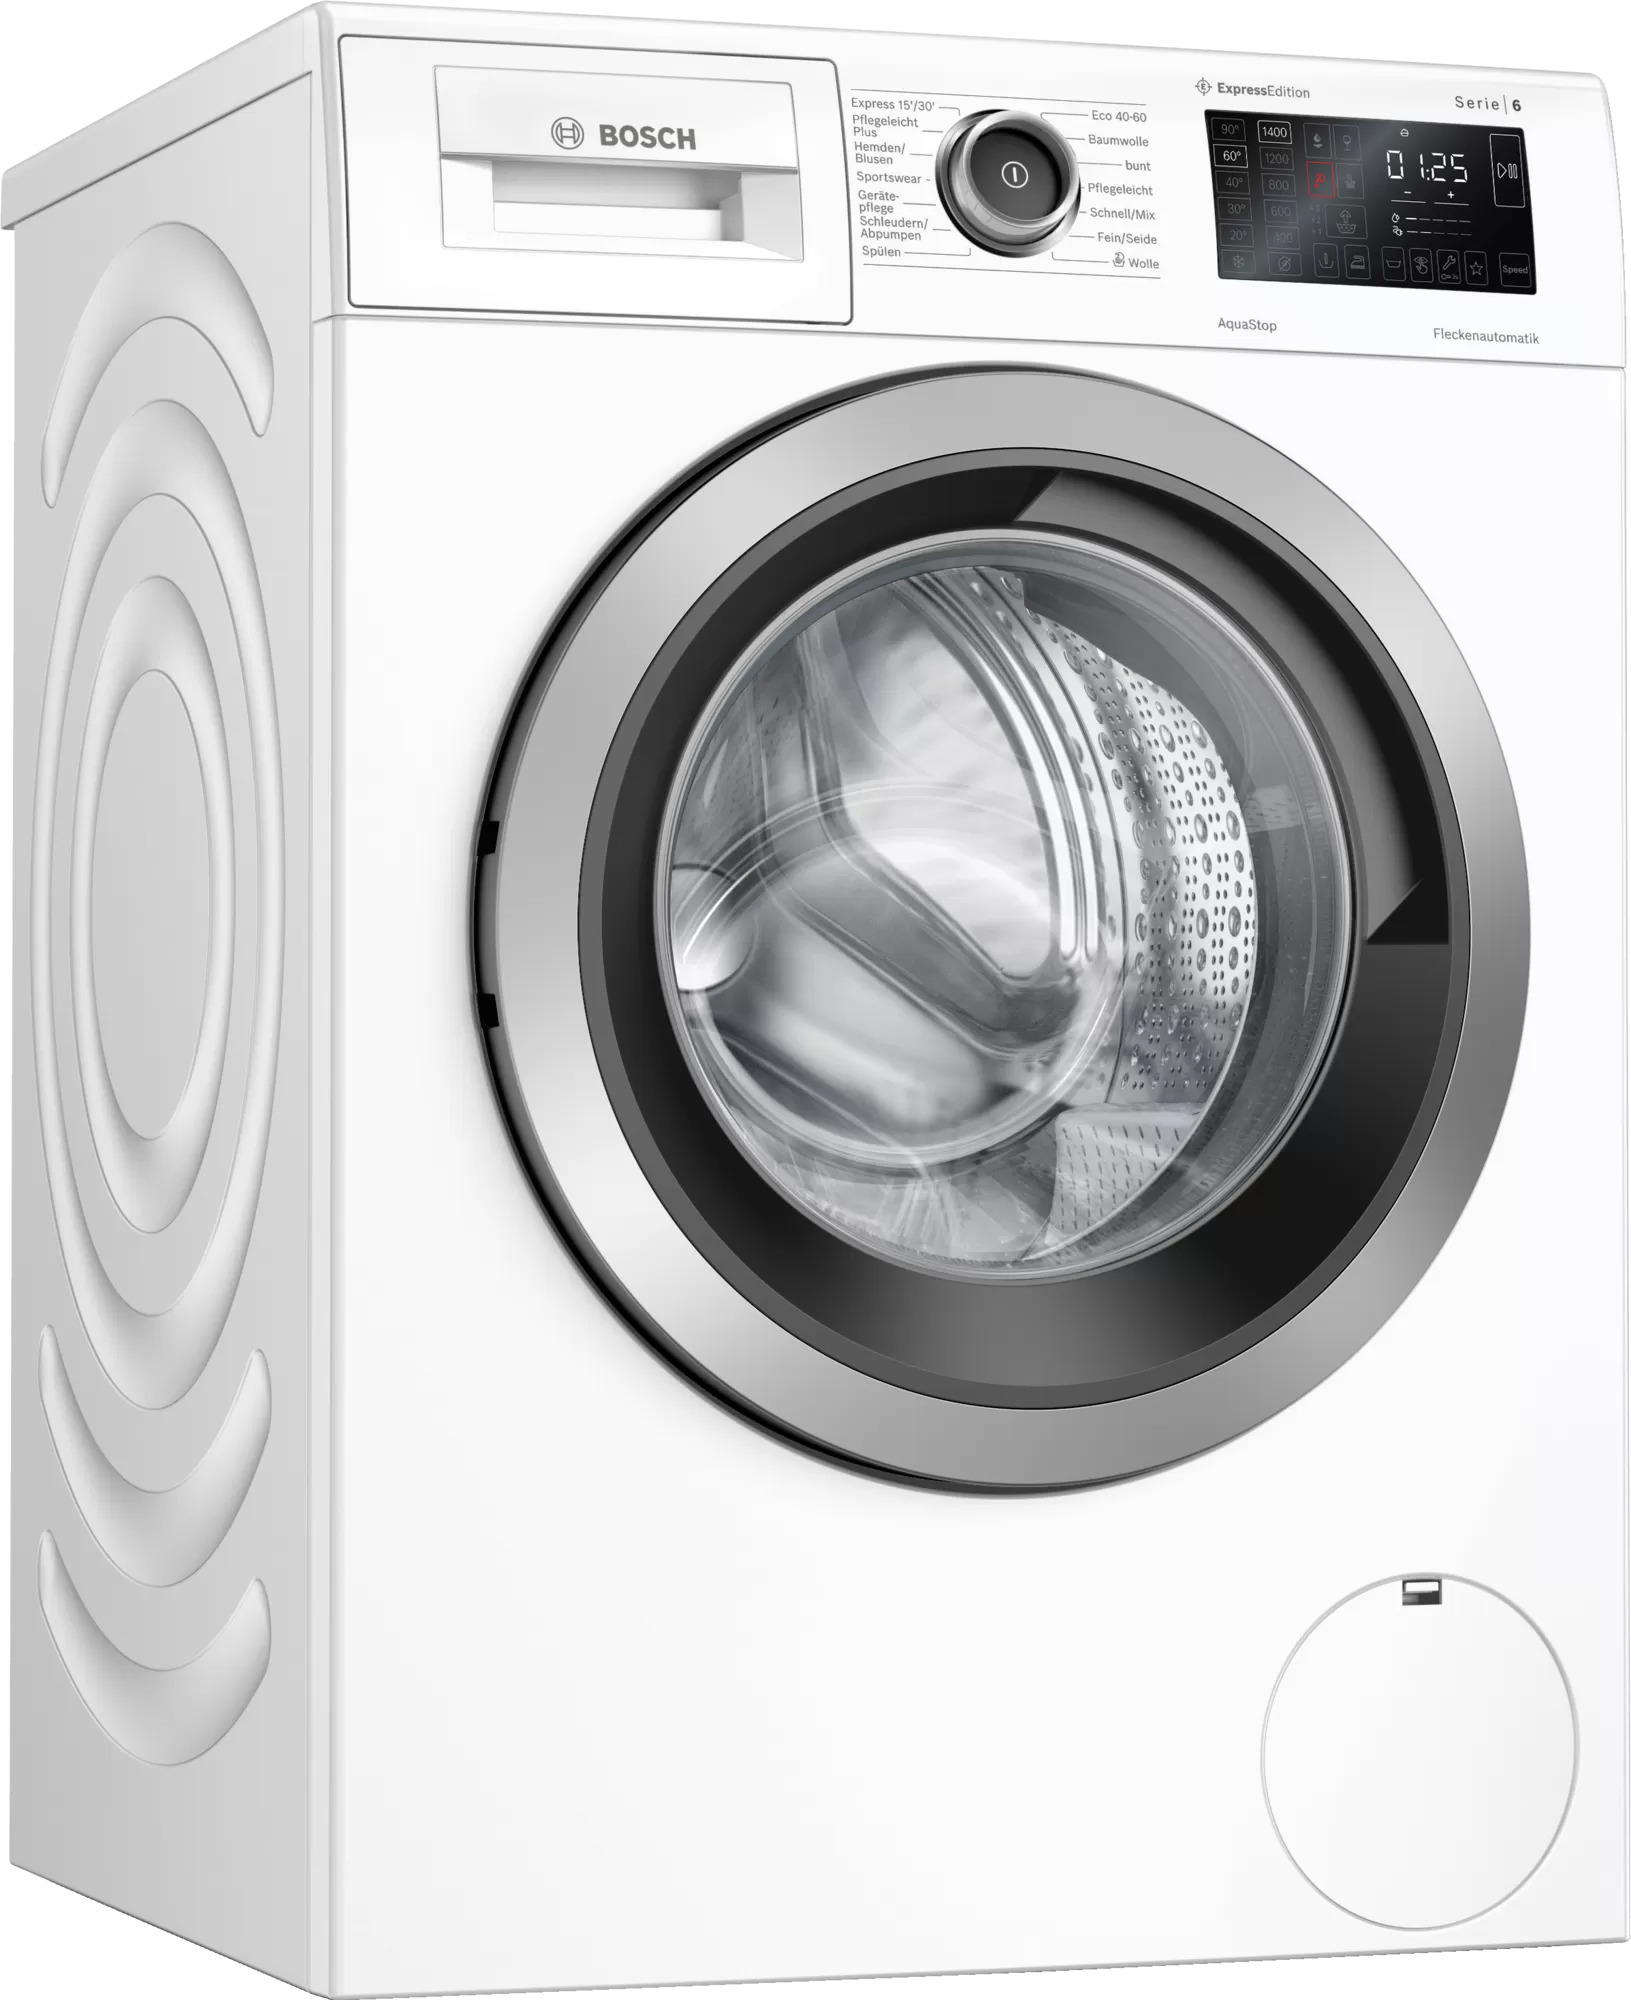 Bosch WAU28RH0 Elektronik weiß Haus | der 9kg Akatronik Waschmaschine U/min stand 1400 